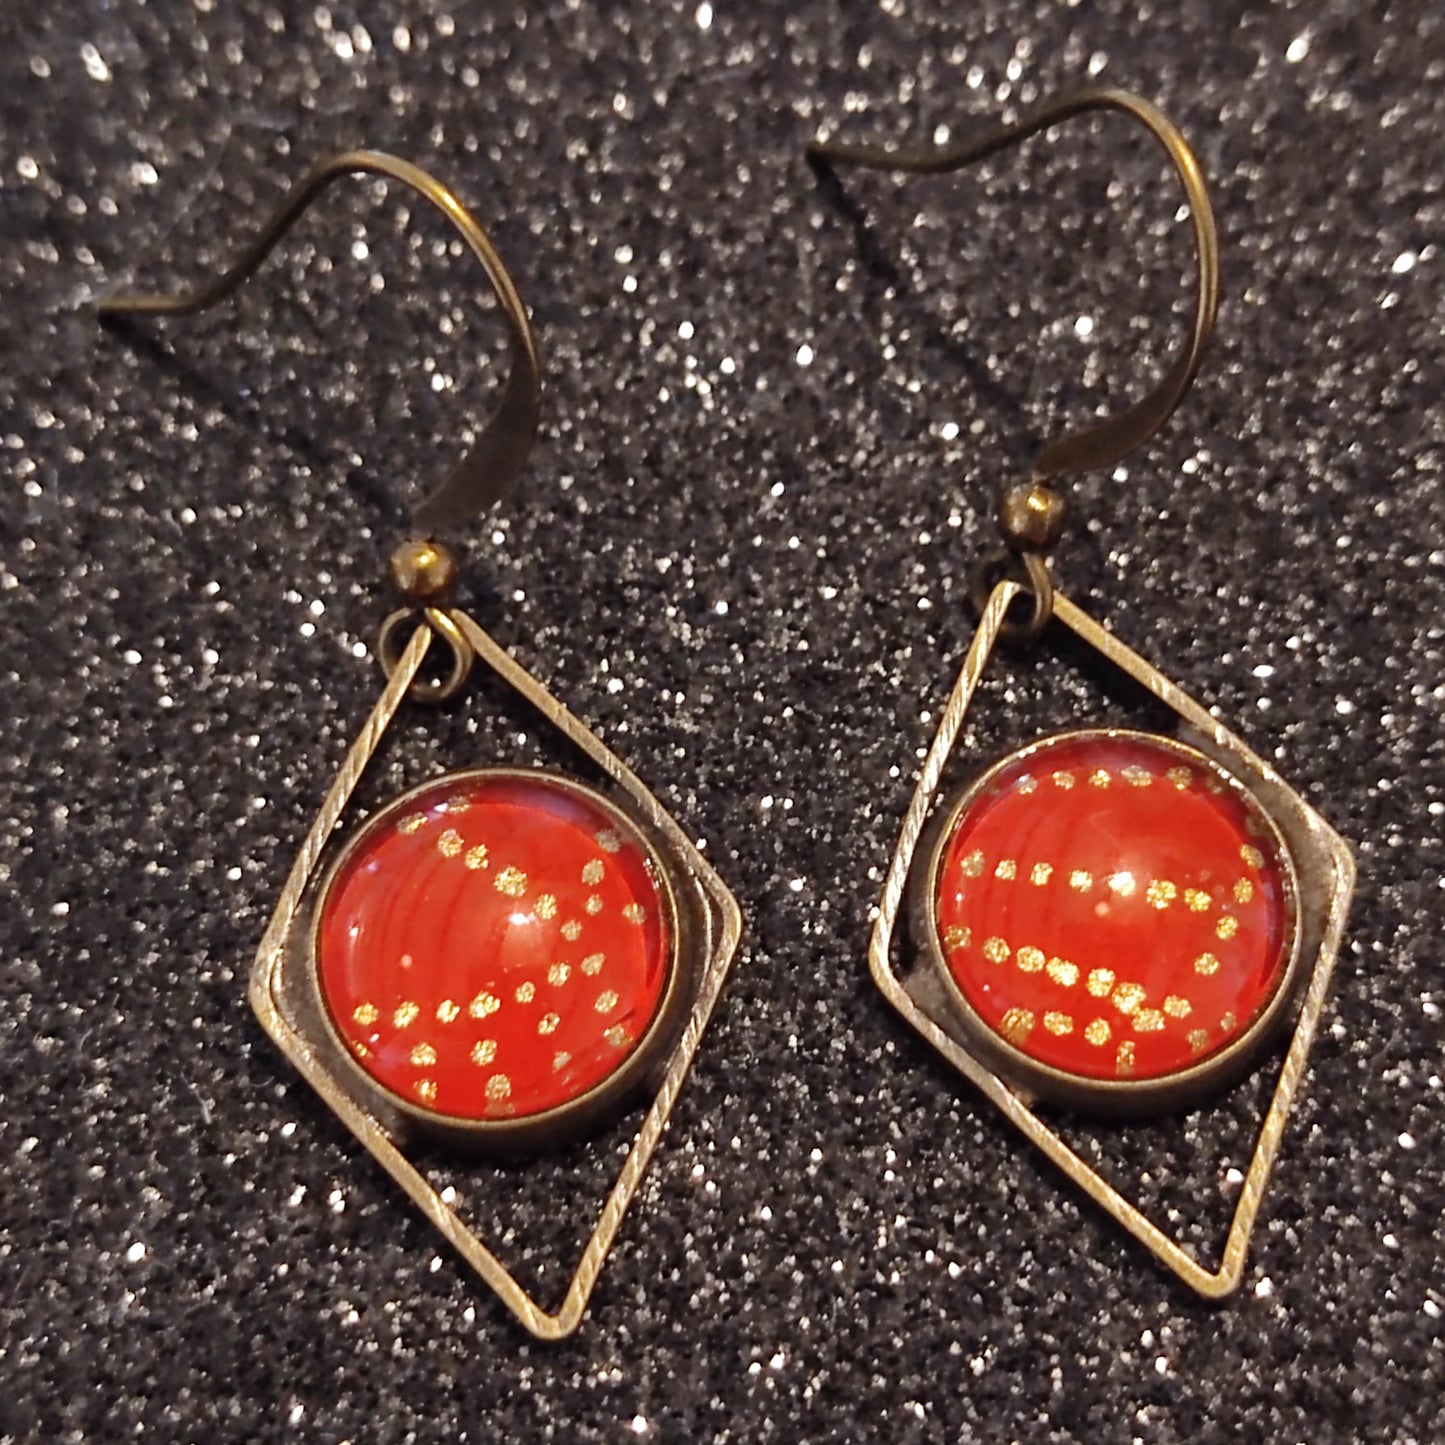 Boucles d'oreilles courtes - bronze - cabochons ronds 10mm - Forme losange - Pois dorés fond rouge